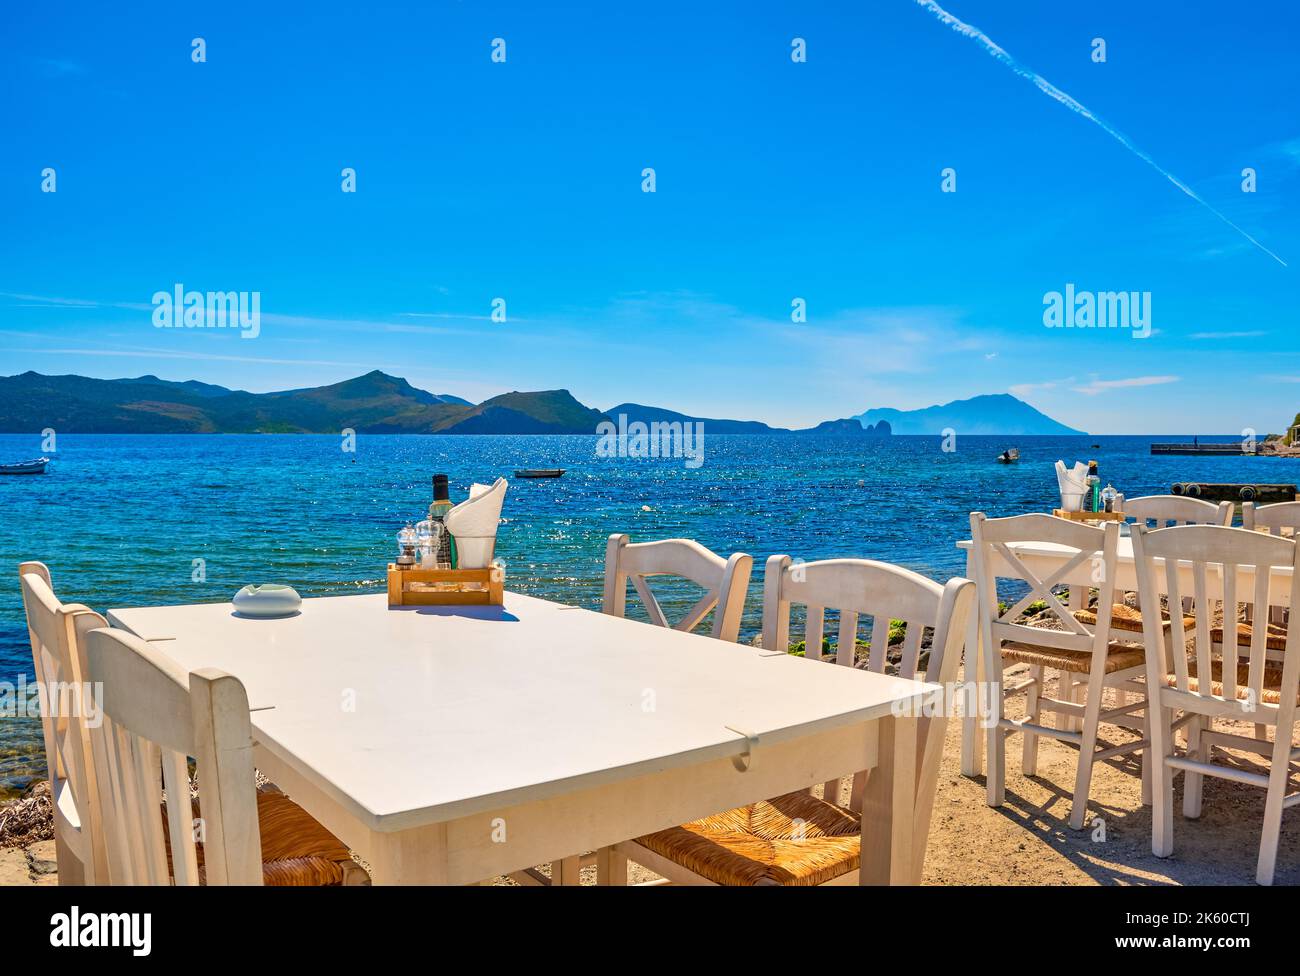 Weiße Stühle und Tische der griechischen Taverne am Wasser am Tag. Urlaub, Griechenland, Sommer, Restaurant, Essen im Freien, inseln, Hafen, Yachthafen, Yachten Stockfoto